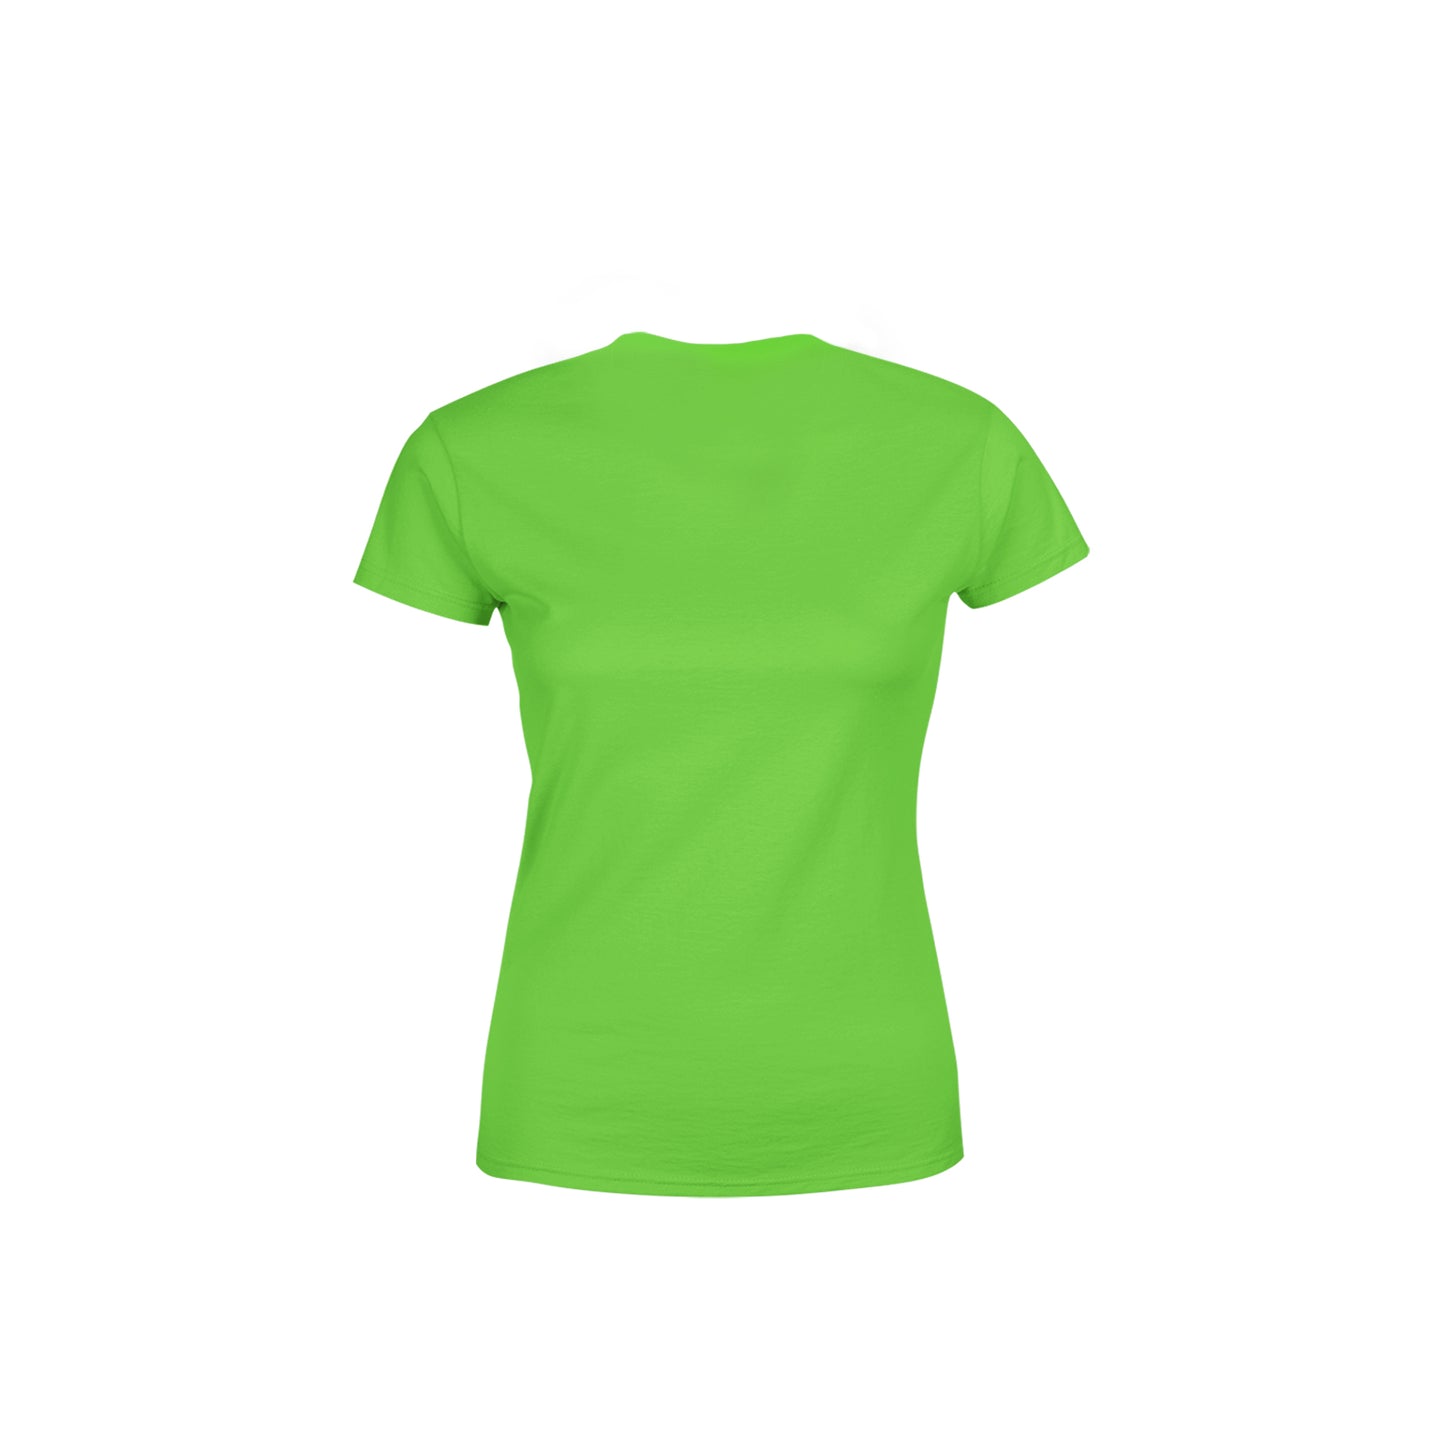 58 Number Women's T-Shirt (Liril Green)